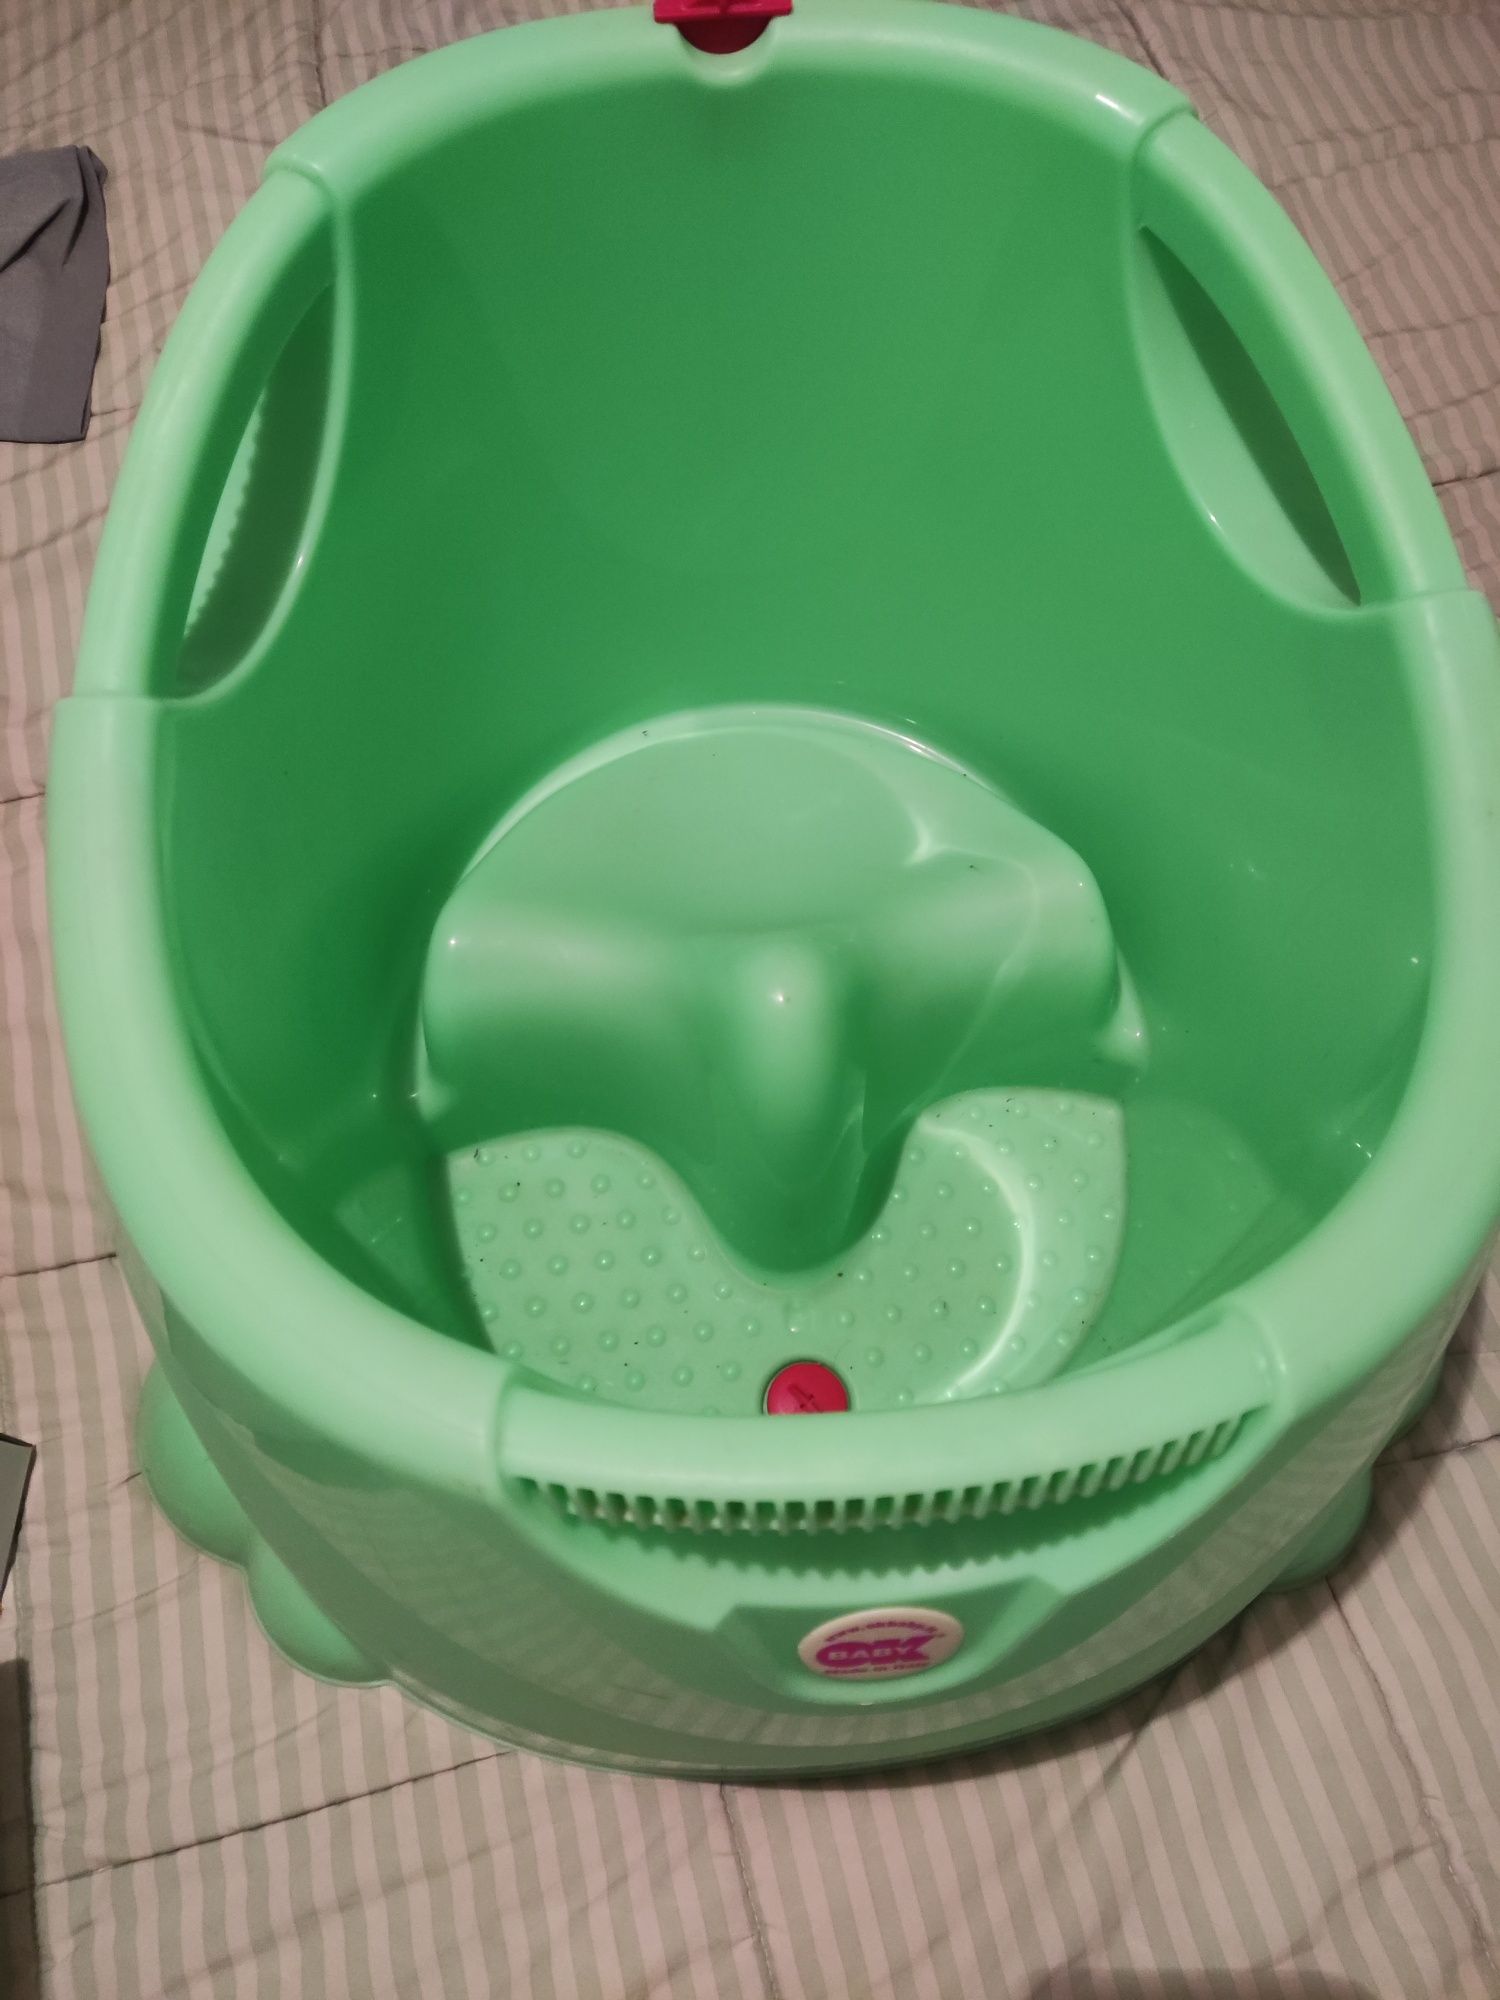 Vand cădiță pentru cabina dus copii 6l+poate fi folosita și ca piscina